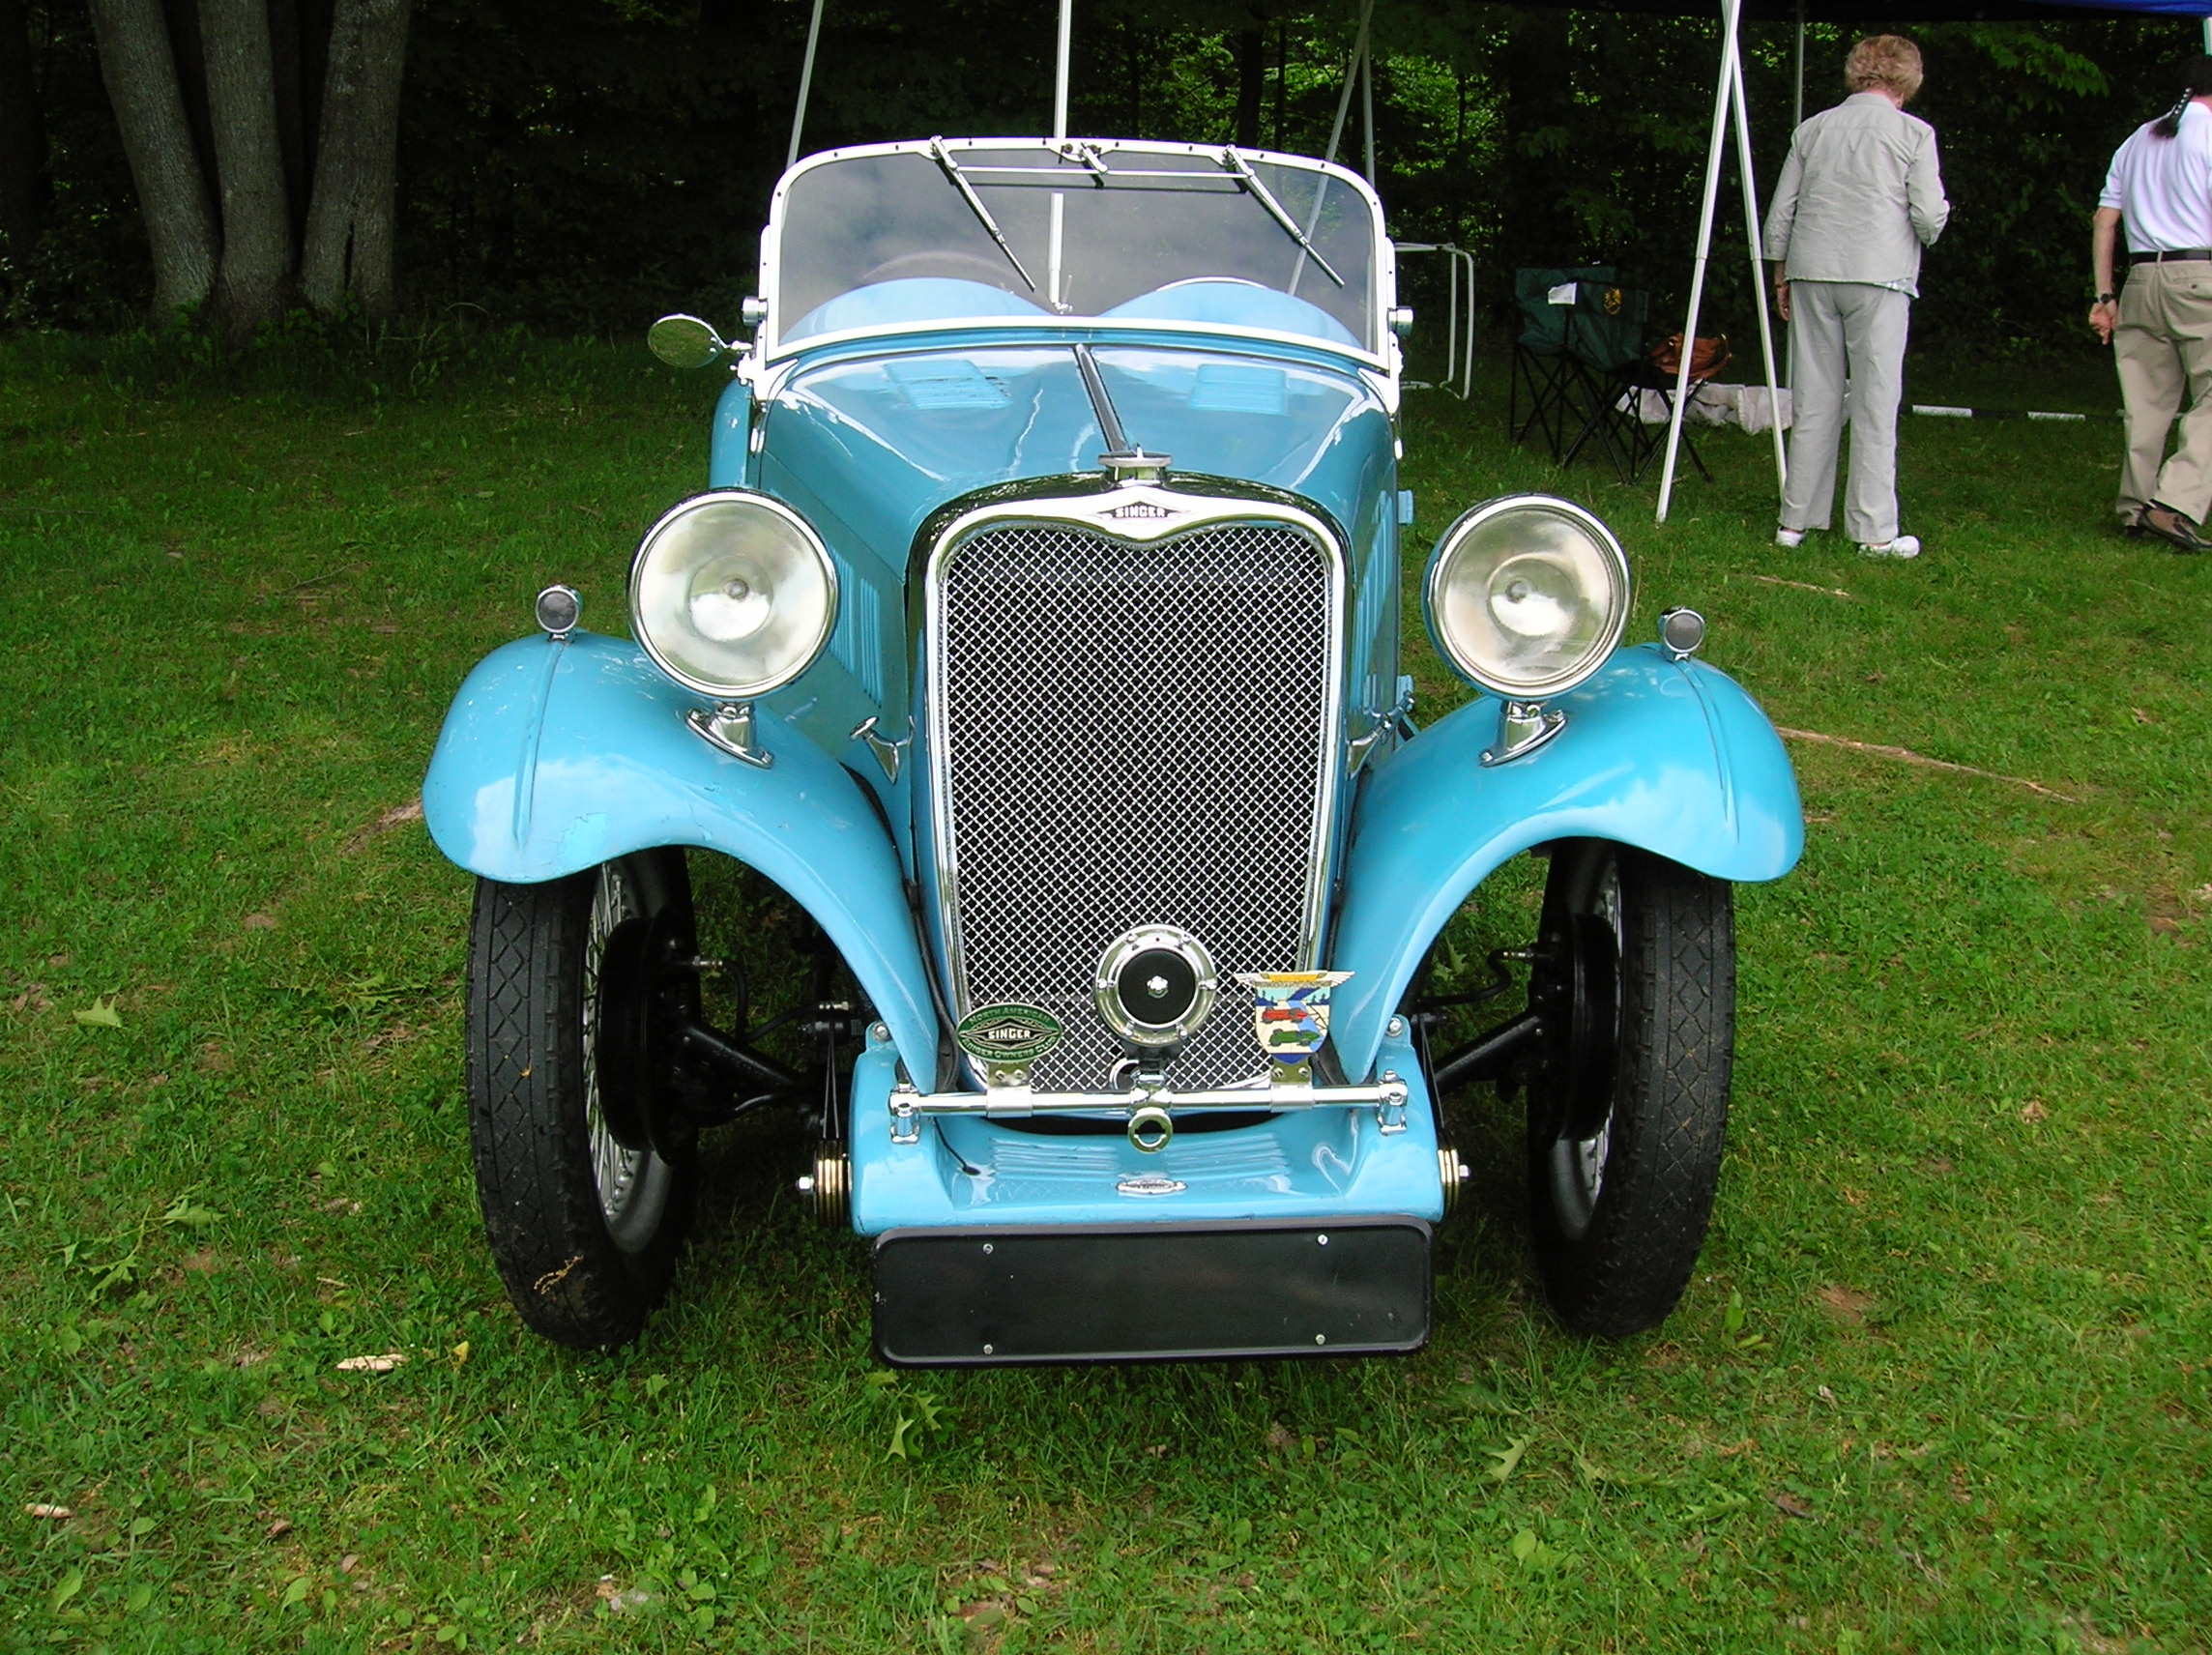 Dossier: 1936 Singer Le Mans 7381328366.jpg - Wikimedia Commons